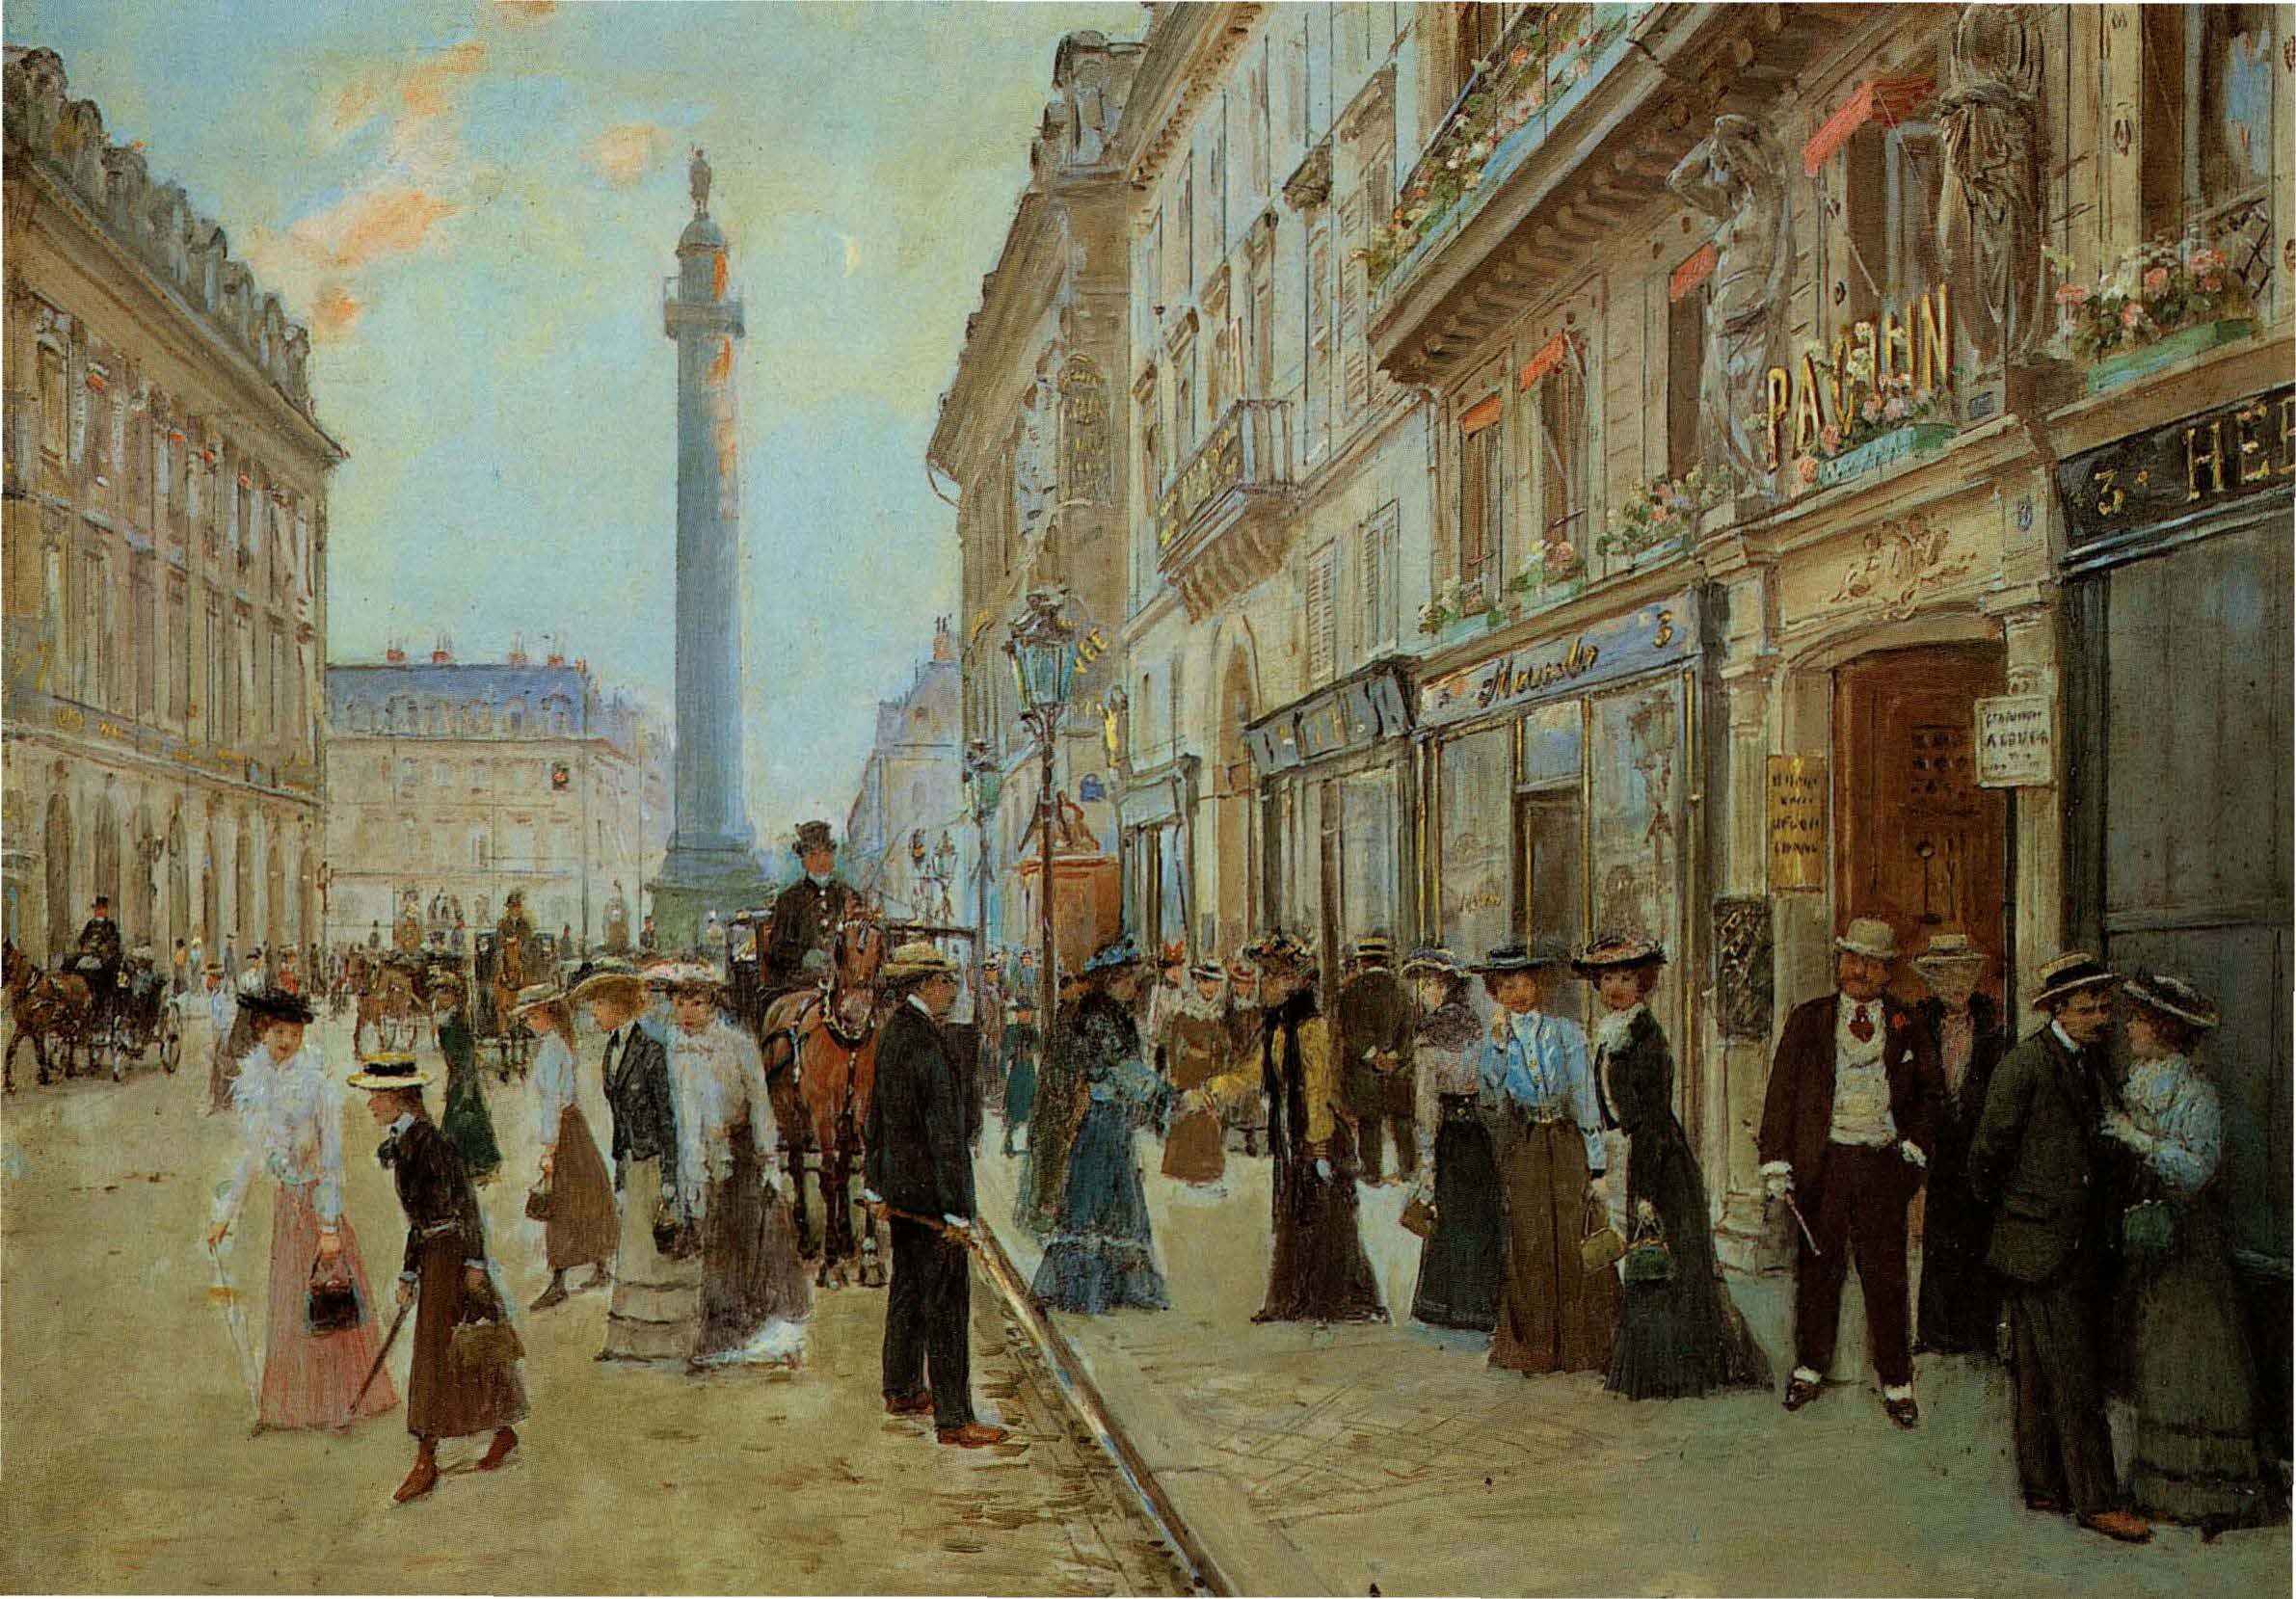 1902,Jean Beraud,La sortie des ouvrières de la maison Paquin,3 rue de la Paix,,France